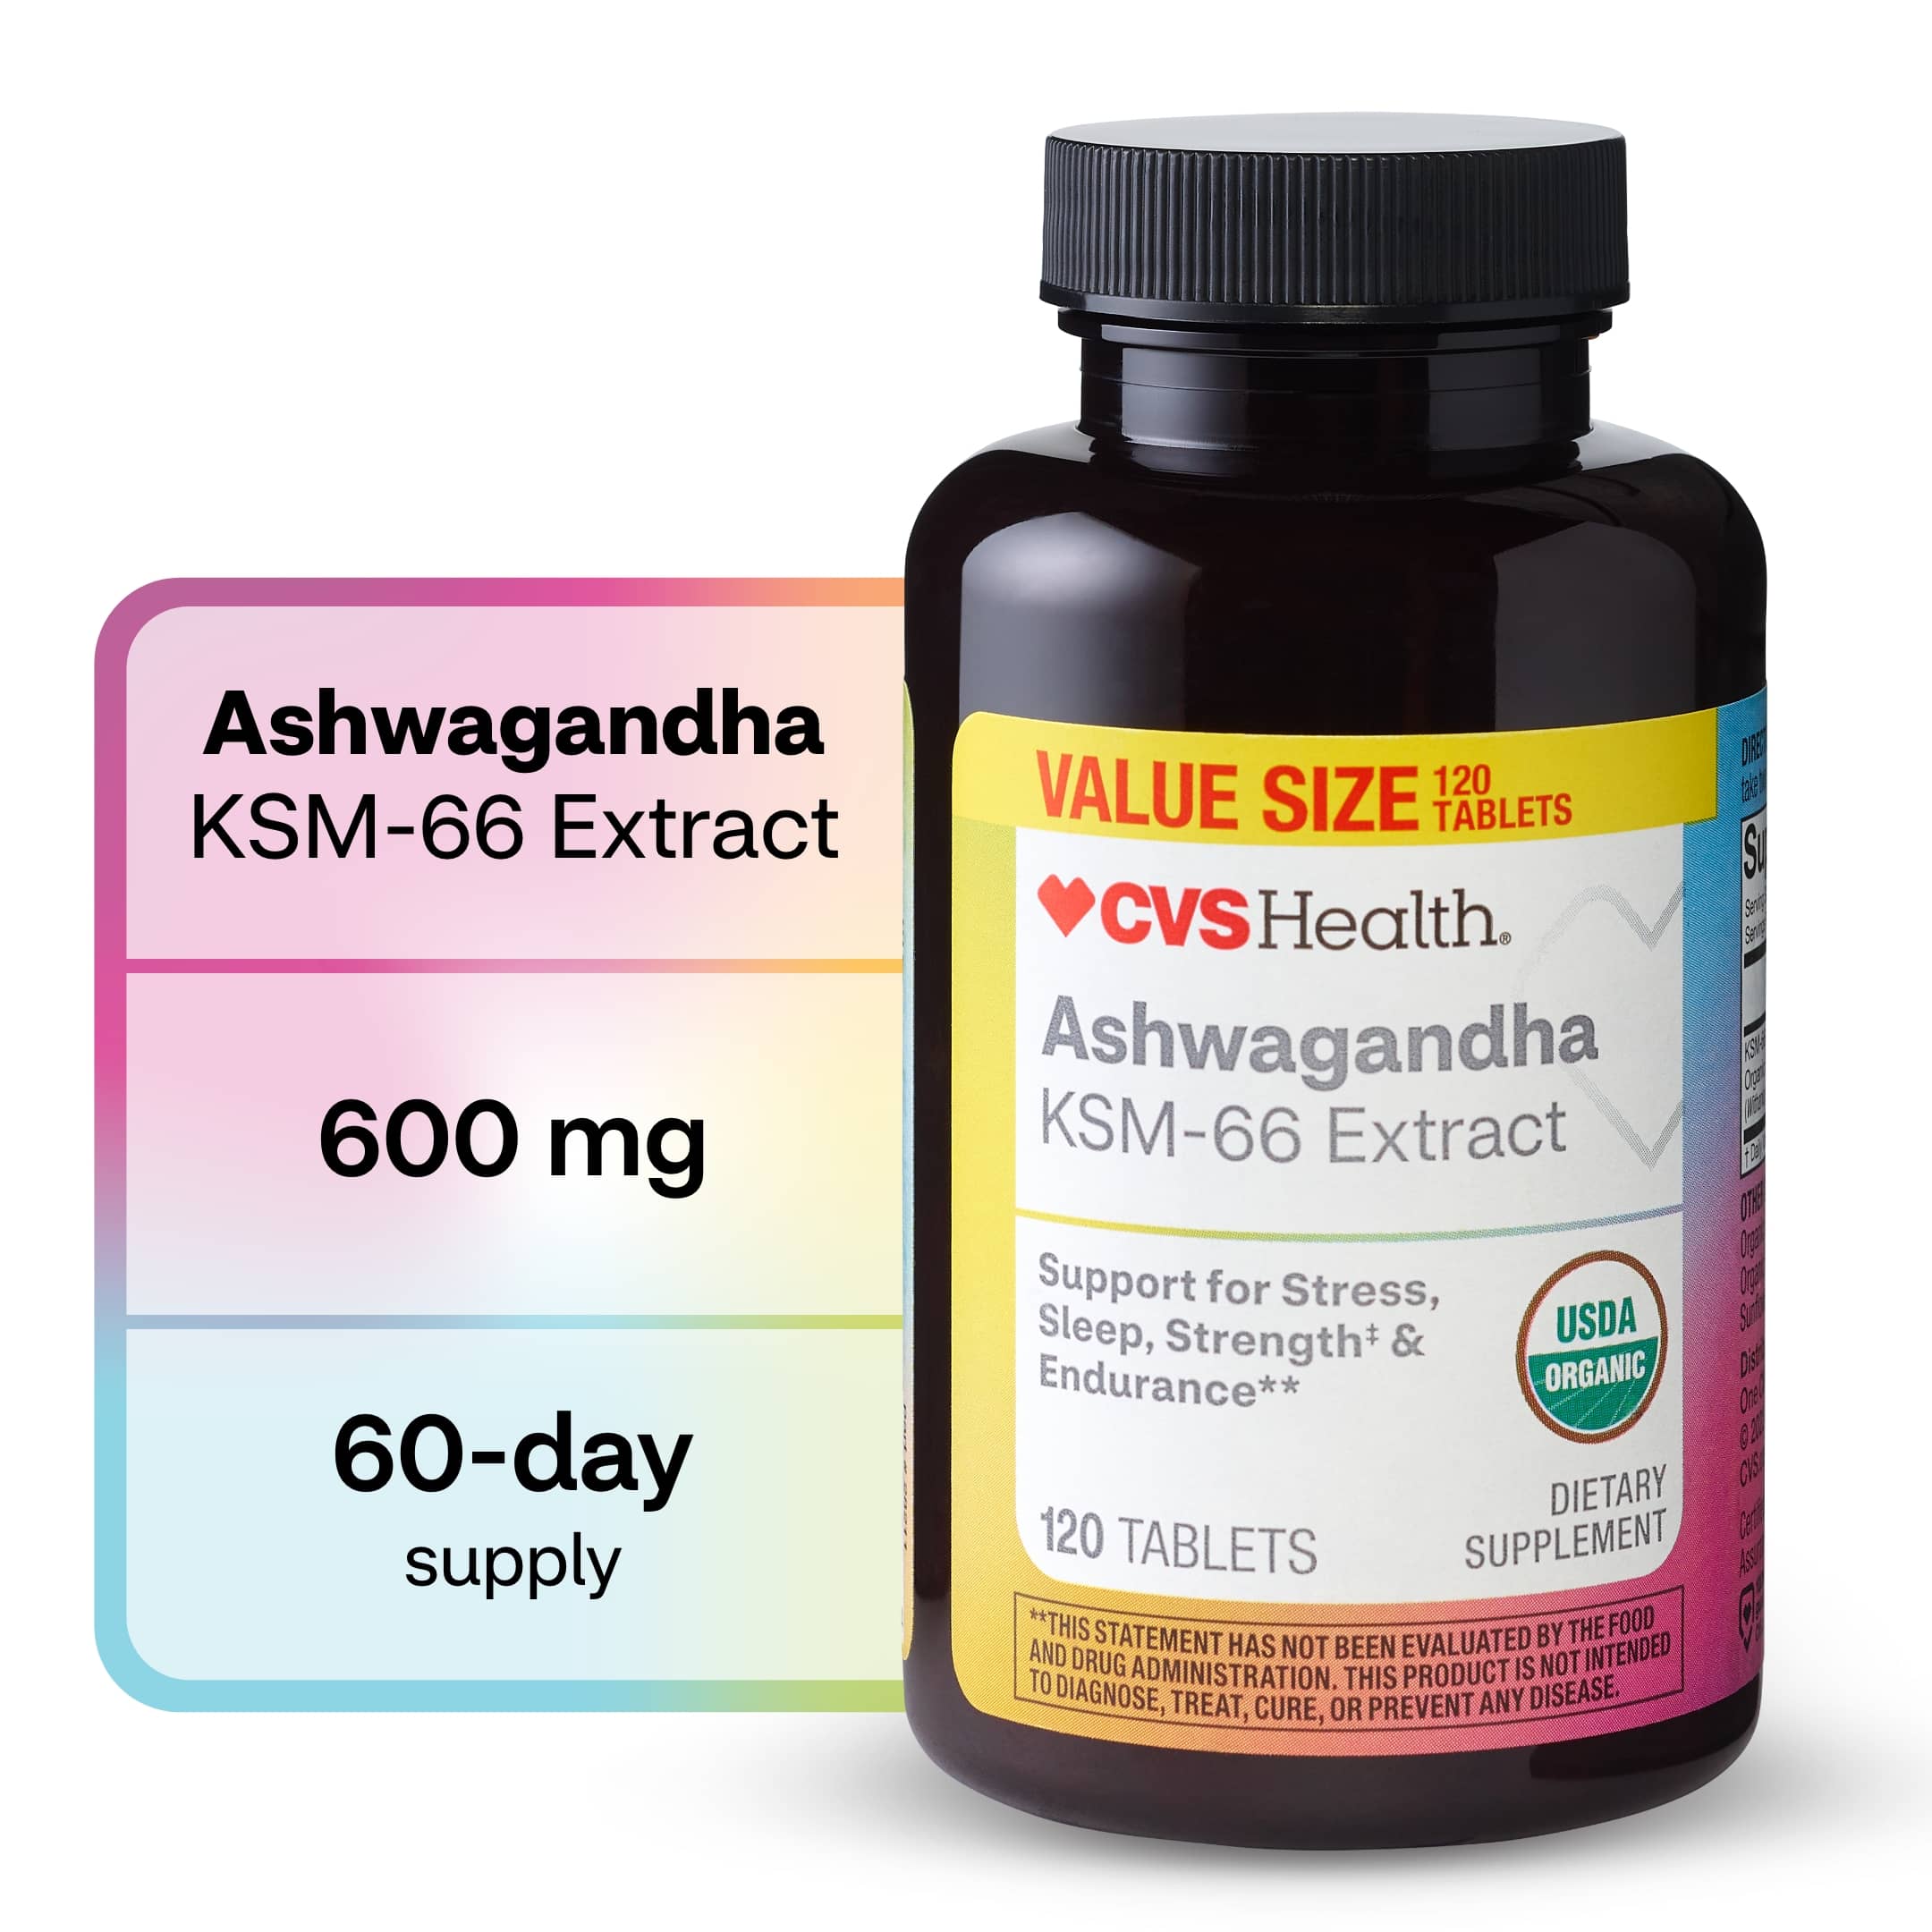 CVS Health Ashwagandha Ksm-66 Tablets Value Size, 120 CT